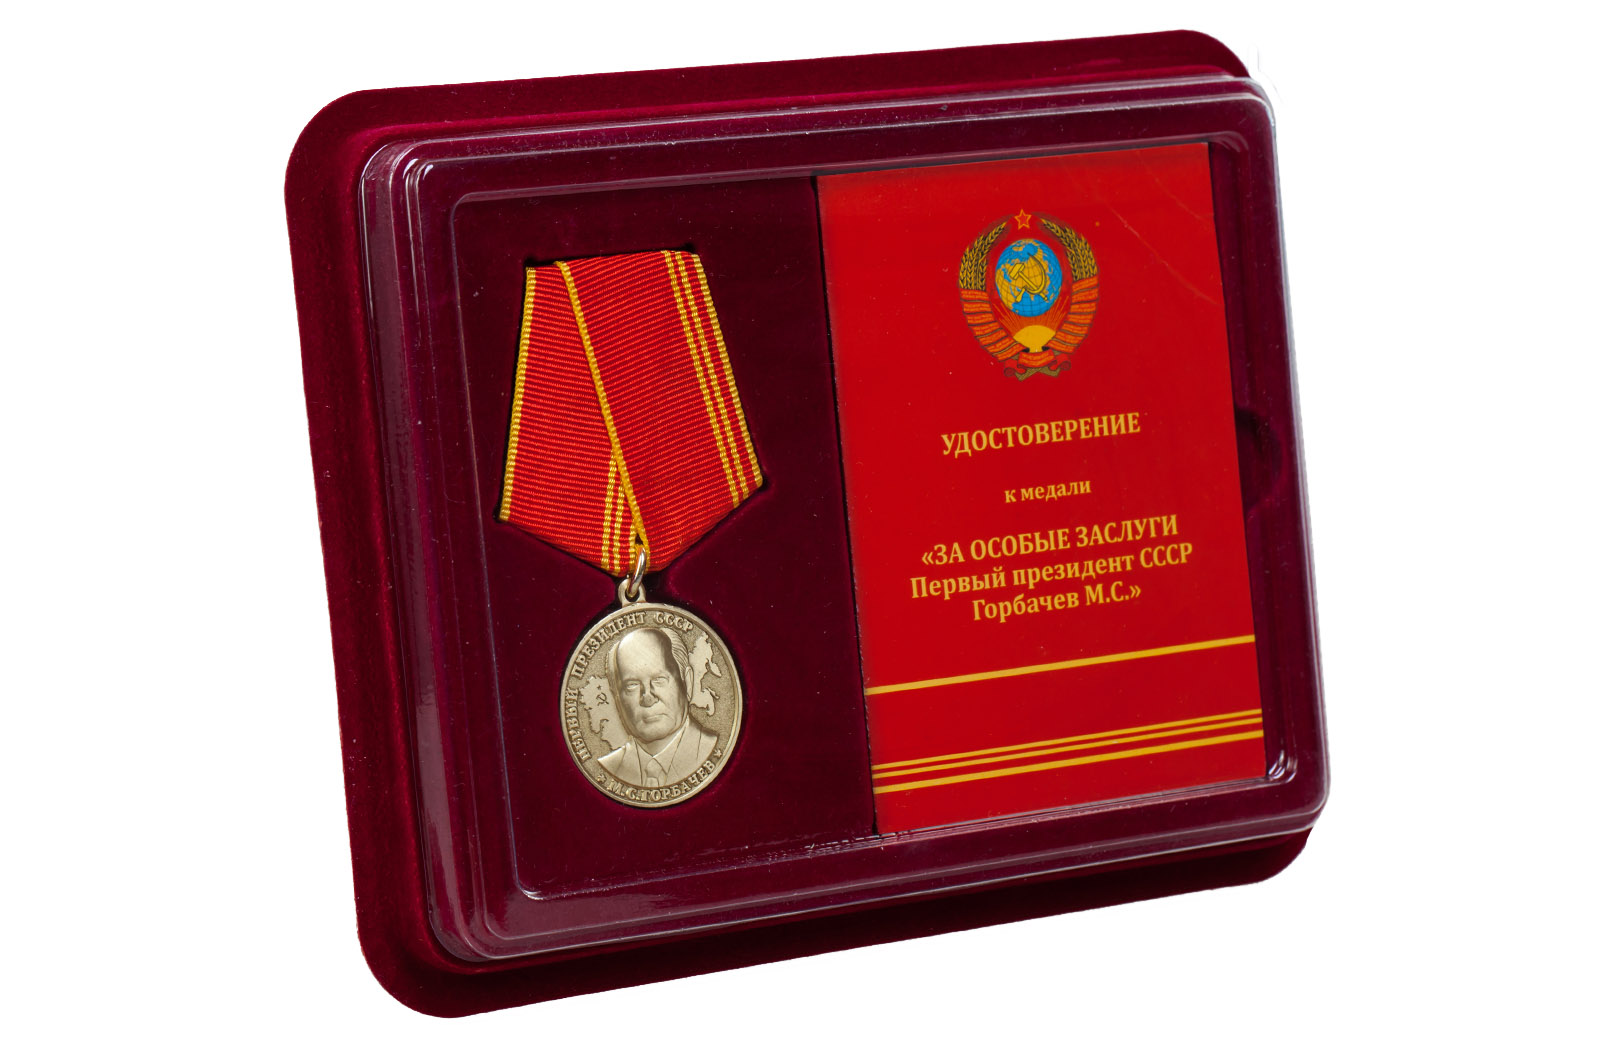 Медаль "За особые заслуги" Первый президент СССР Горбачев М.С. с удостоверением 